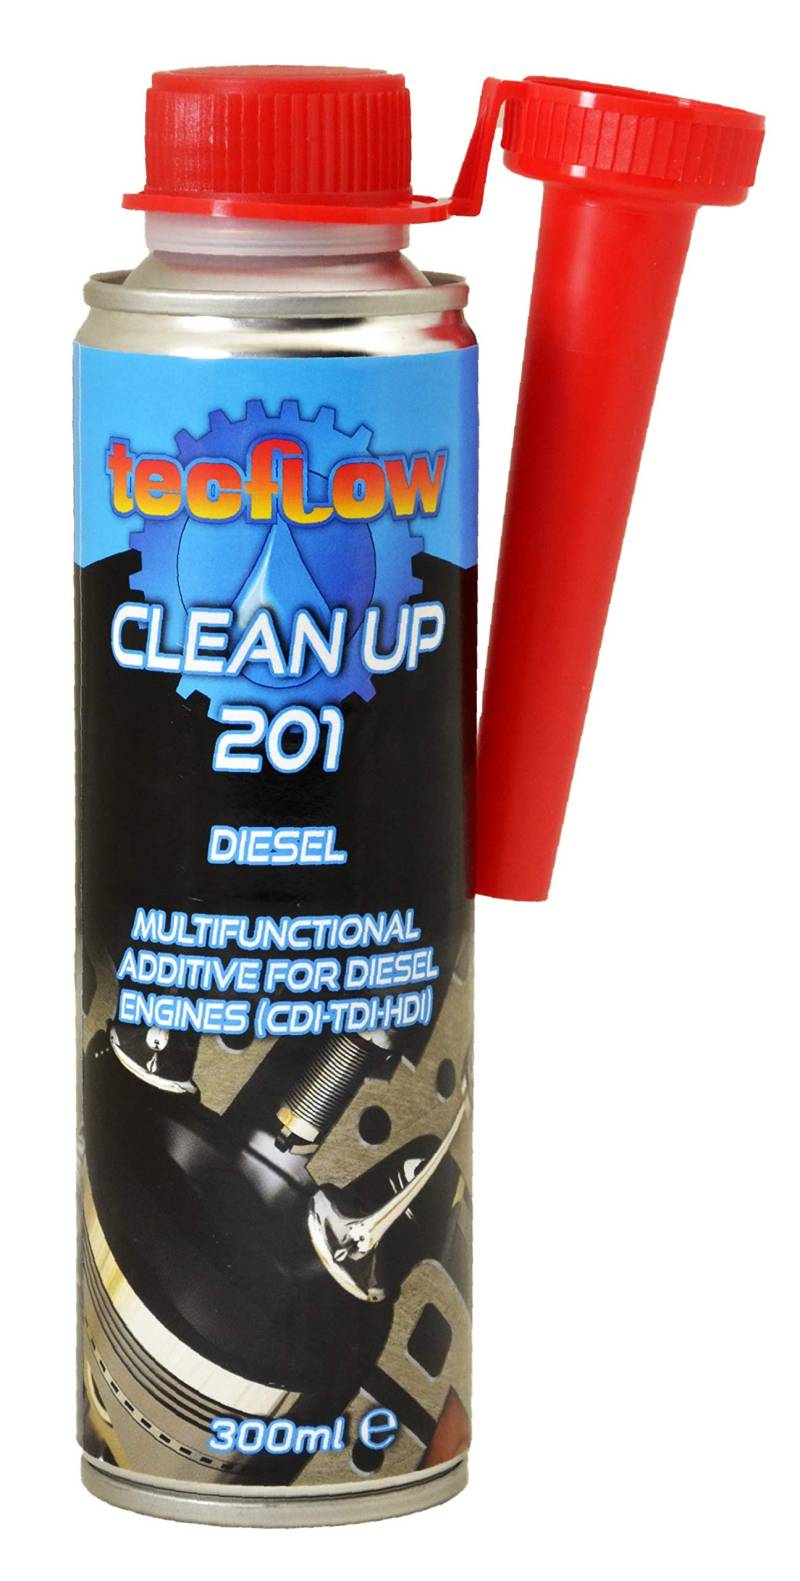 Tecflow Clean Up 201 Zusatzstoff Diesel von Tecflow